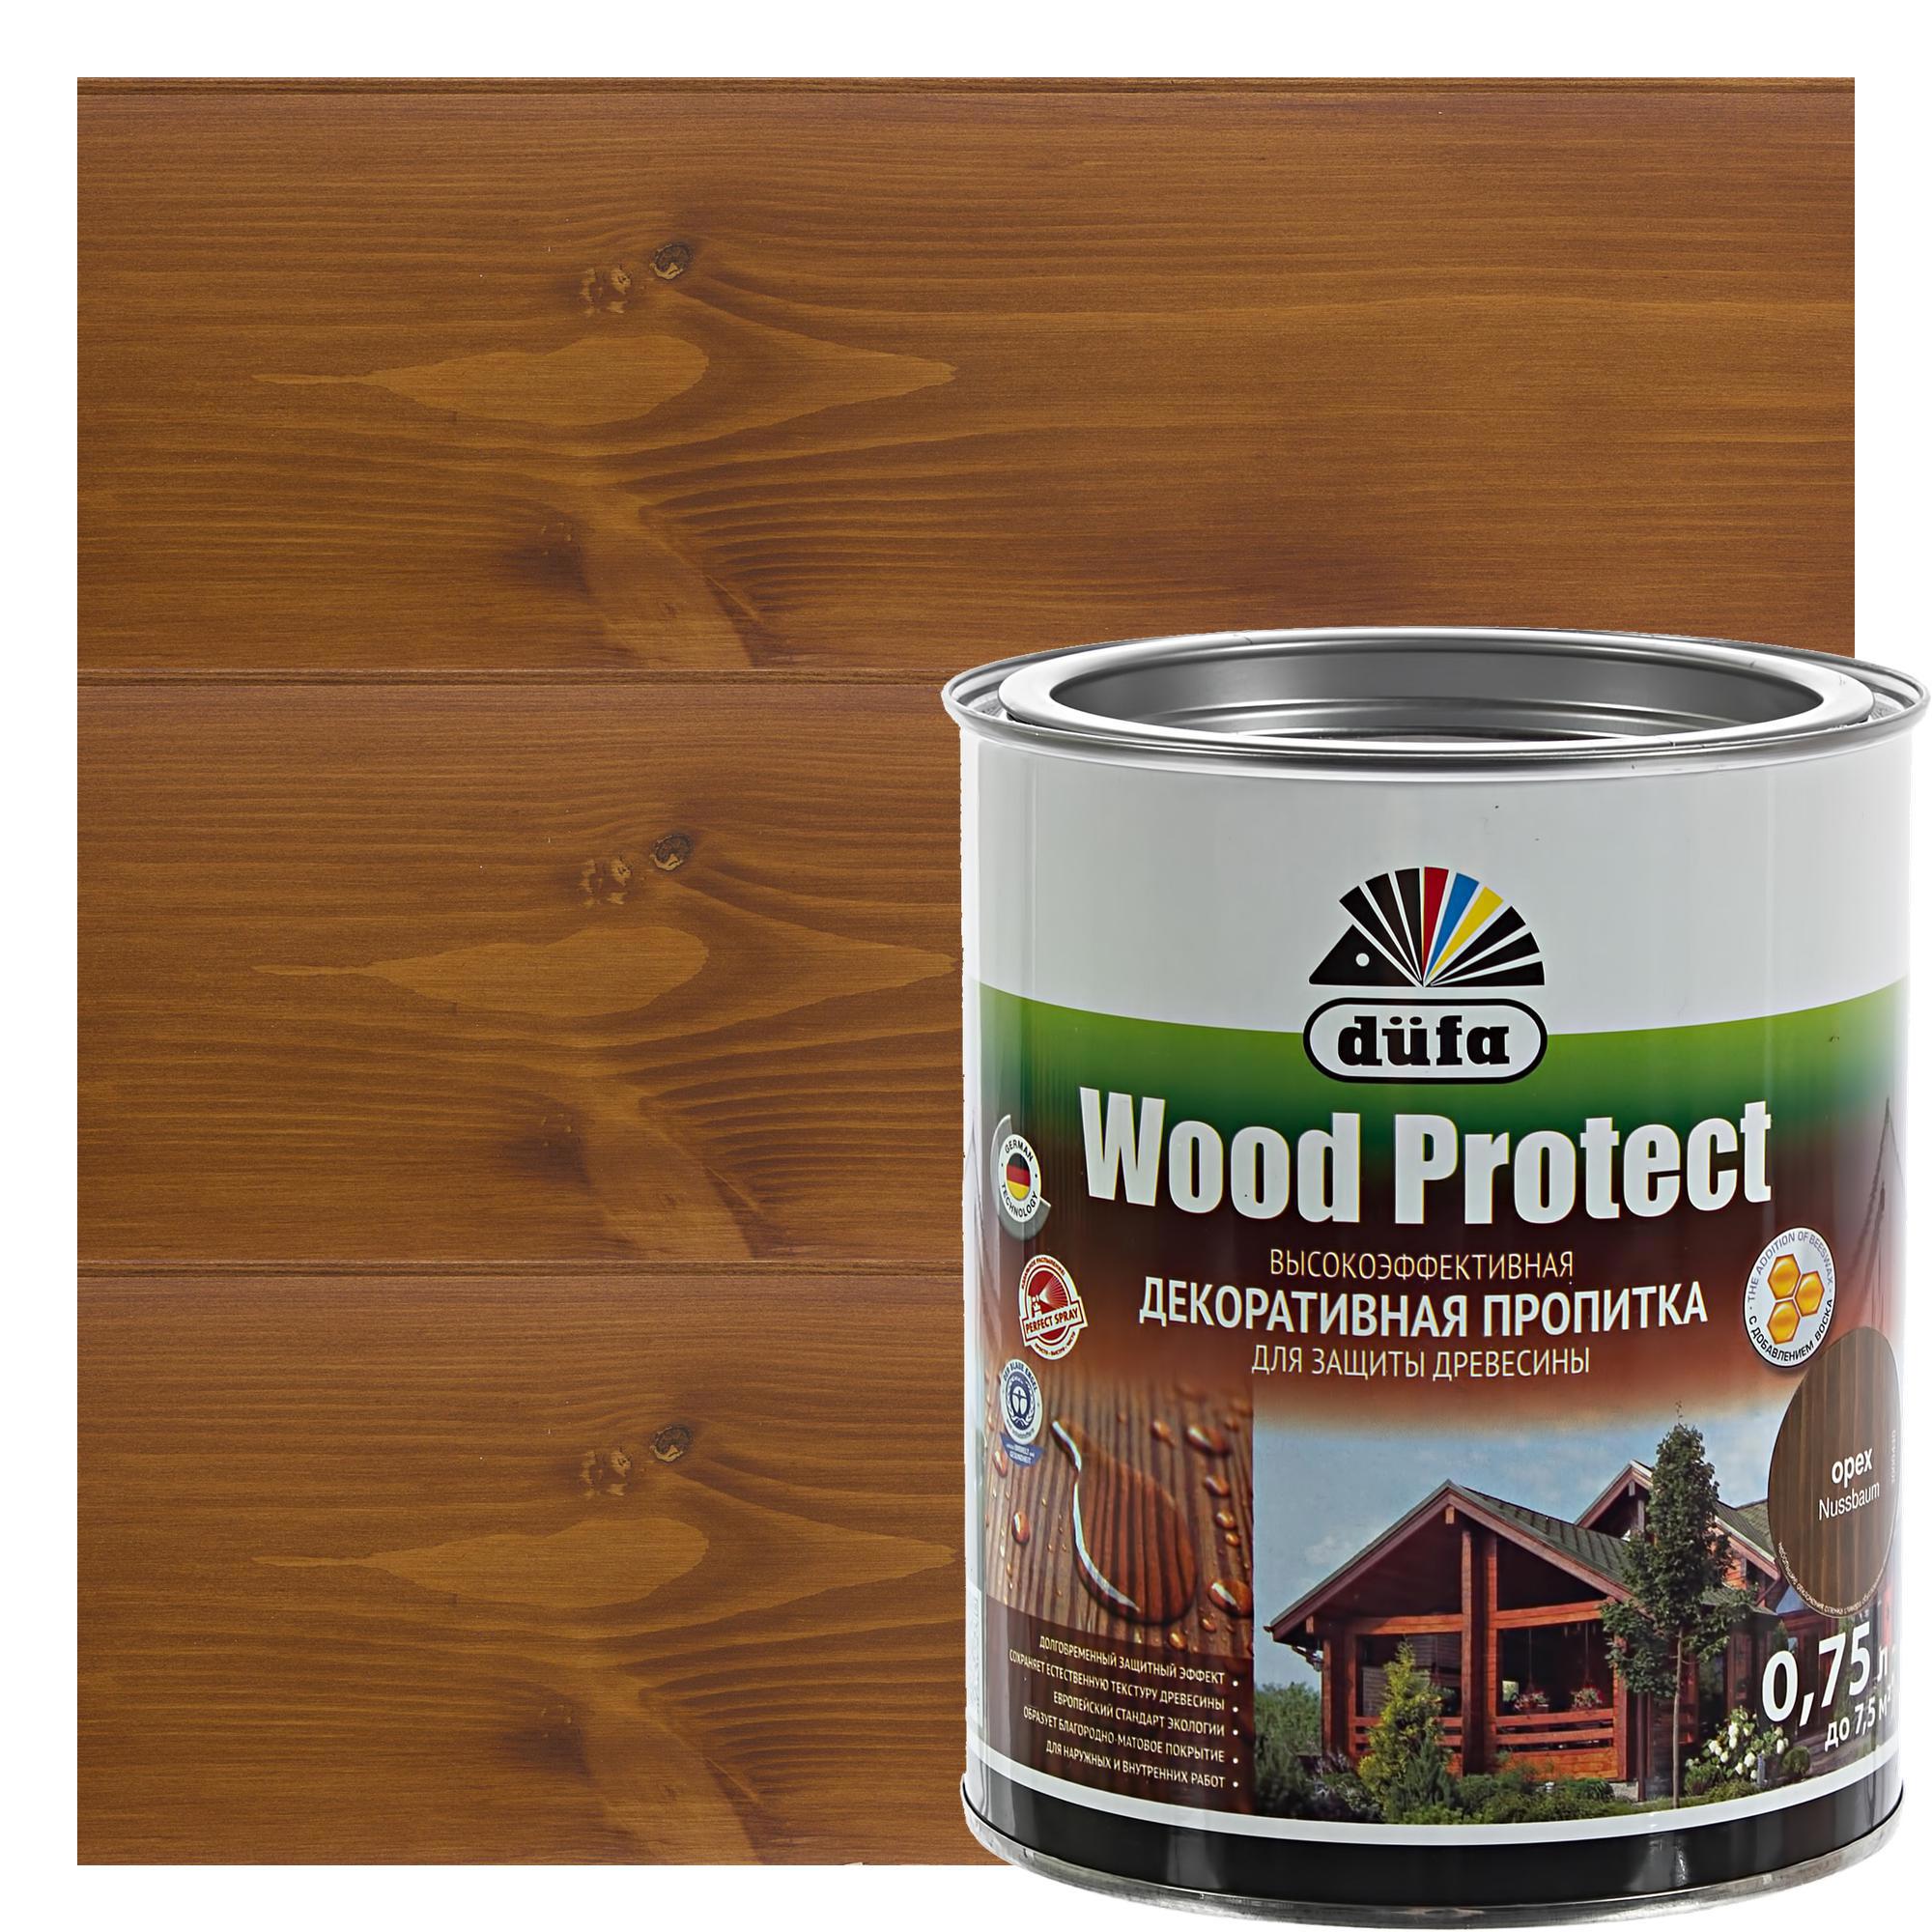 14724413 Антисептик Wood Protect цвет орех 0.75 л STLM-0005068 DUFA